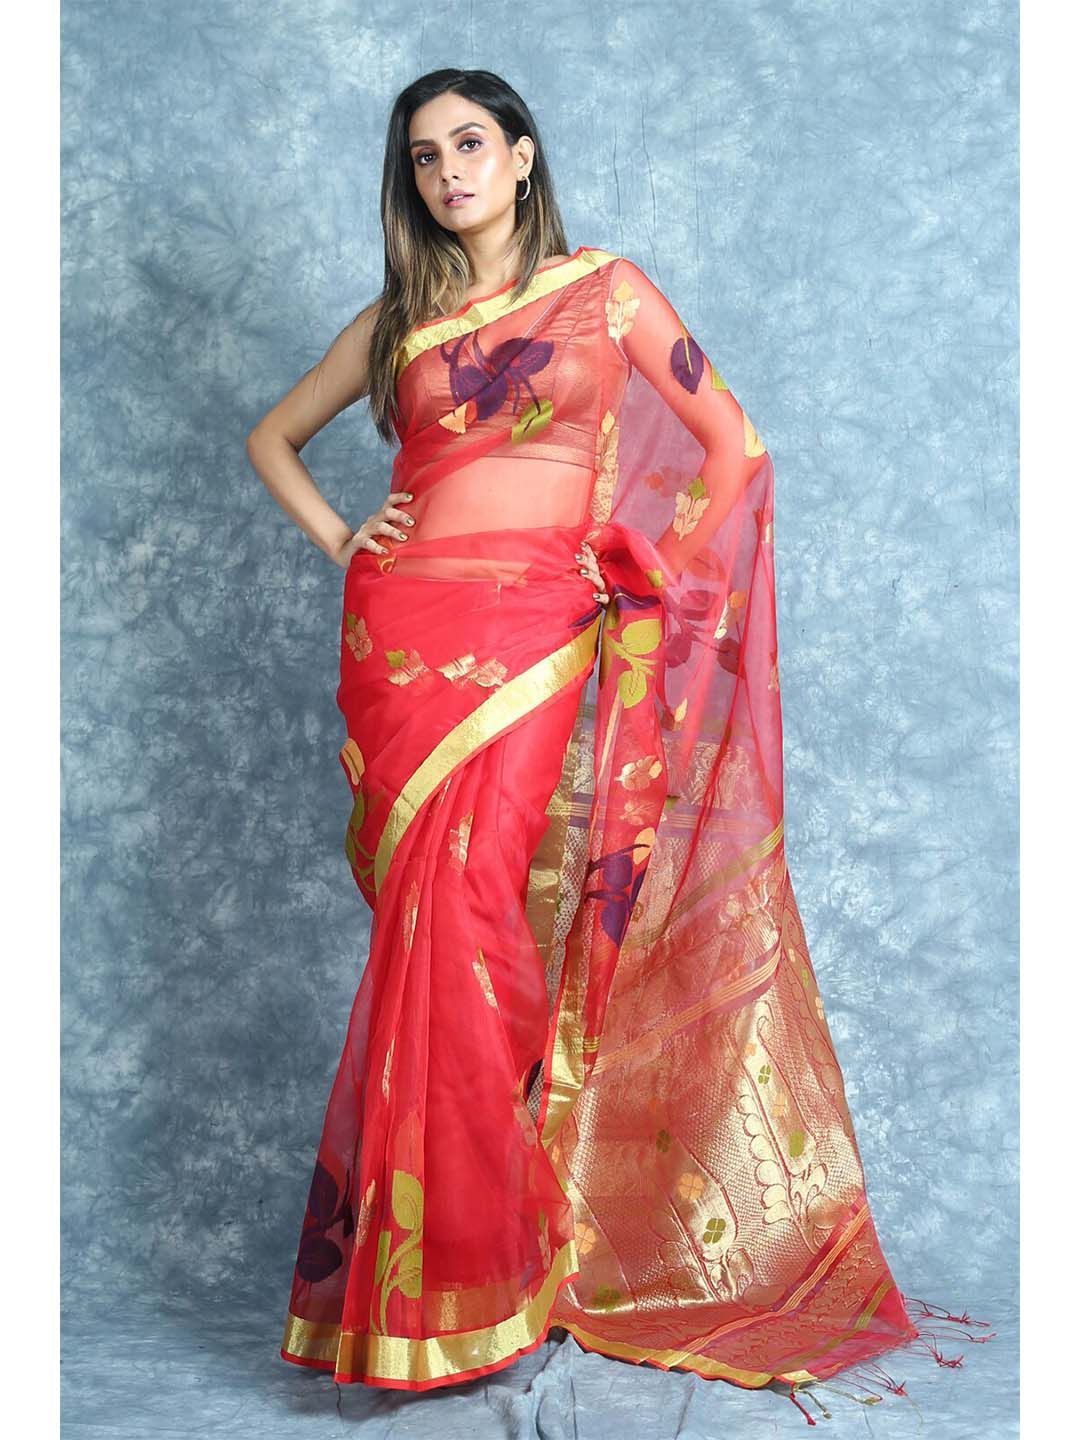 Arhi Red & Gold-Toned Woven Design Zari Pure Silk Saree Price in India